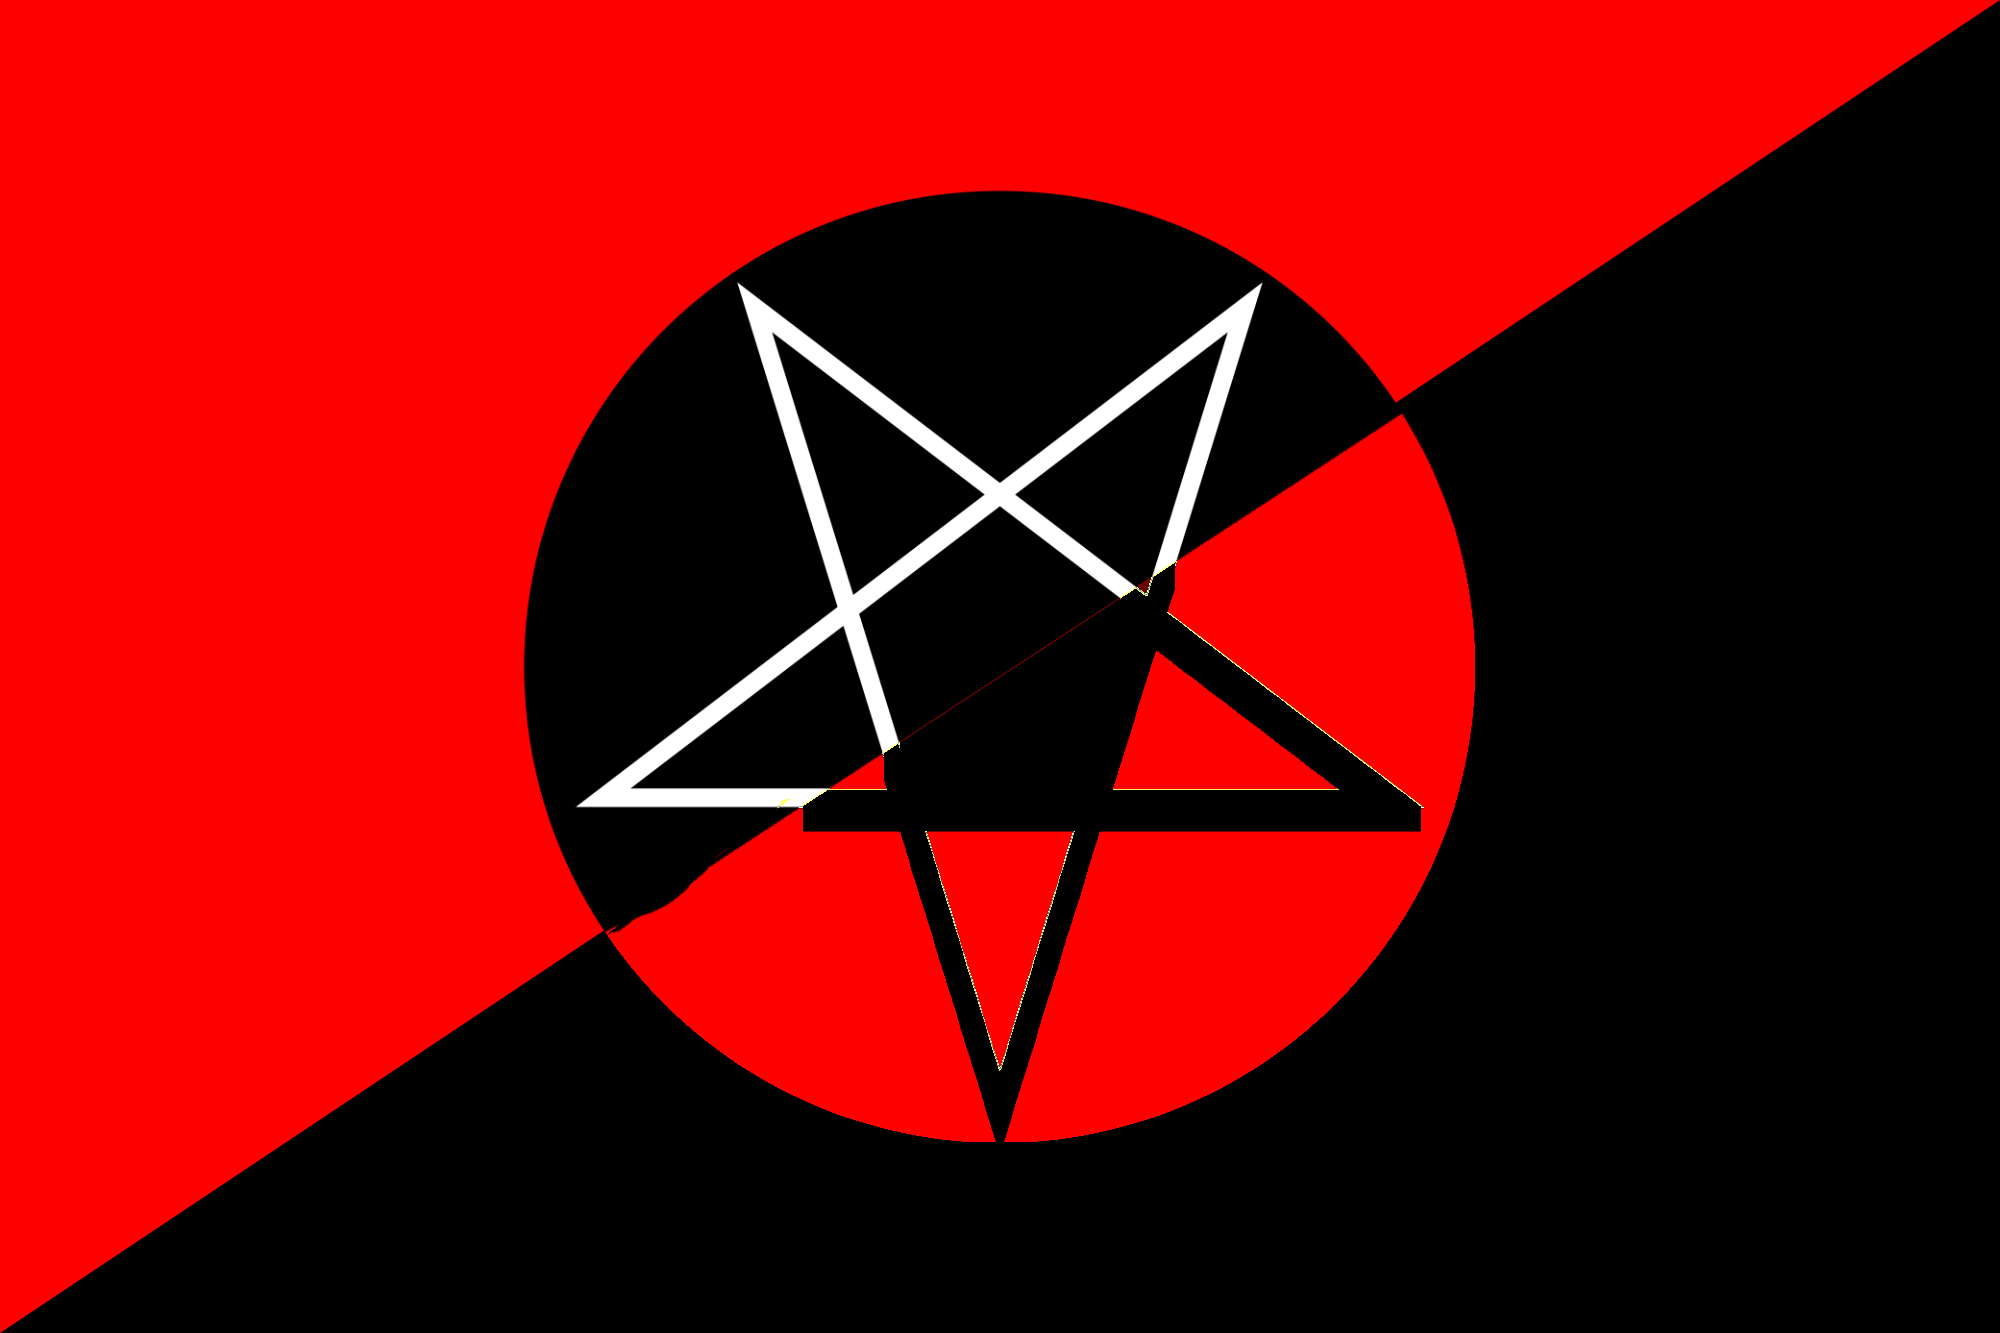 Флаг анархо-синдикалистов. Анархо-Коммунистический флаг. Флаг анархо-синдикалистов Испании. Технократический анархо коммунизм.